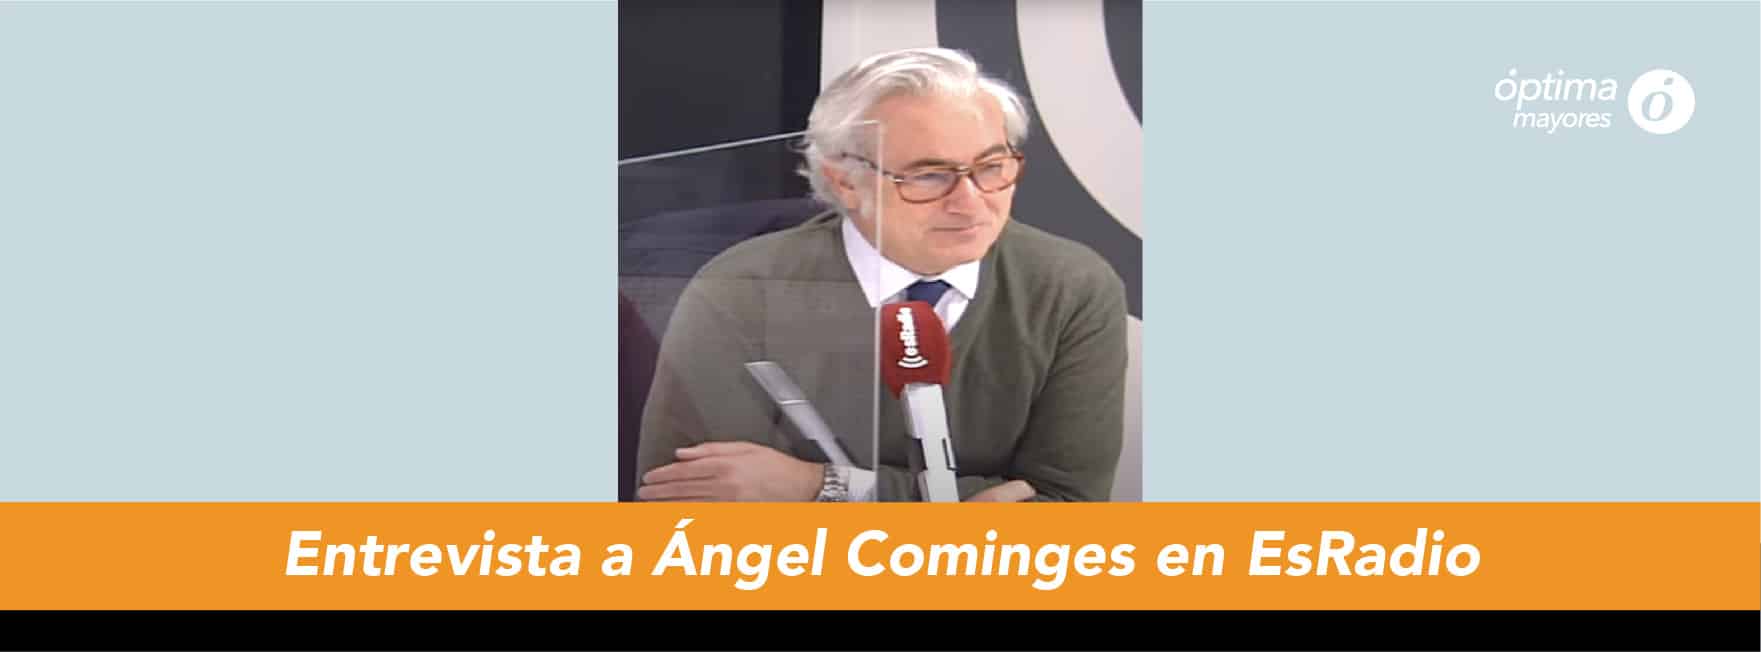 entrevista_angel_cominges_esradio_hipoteca_inversa